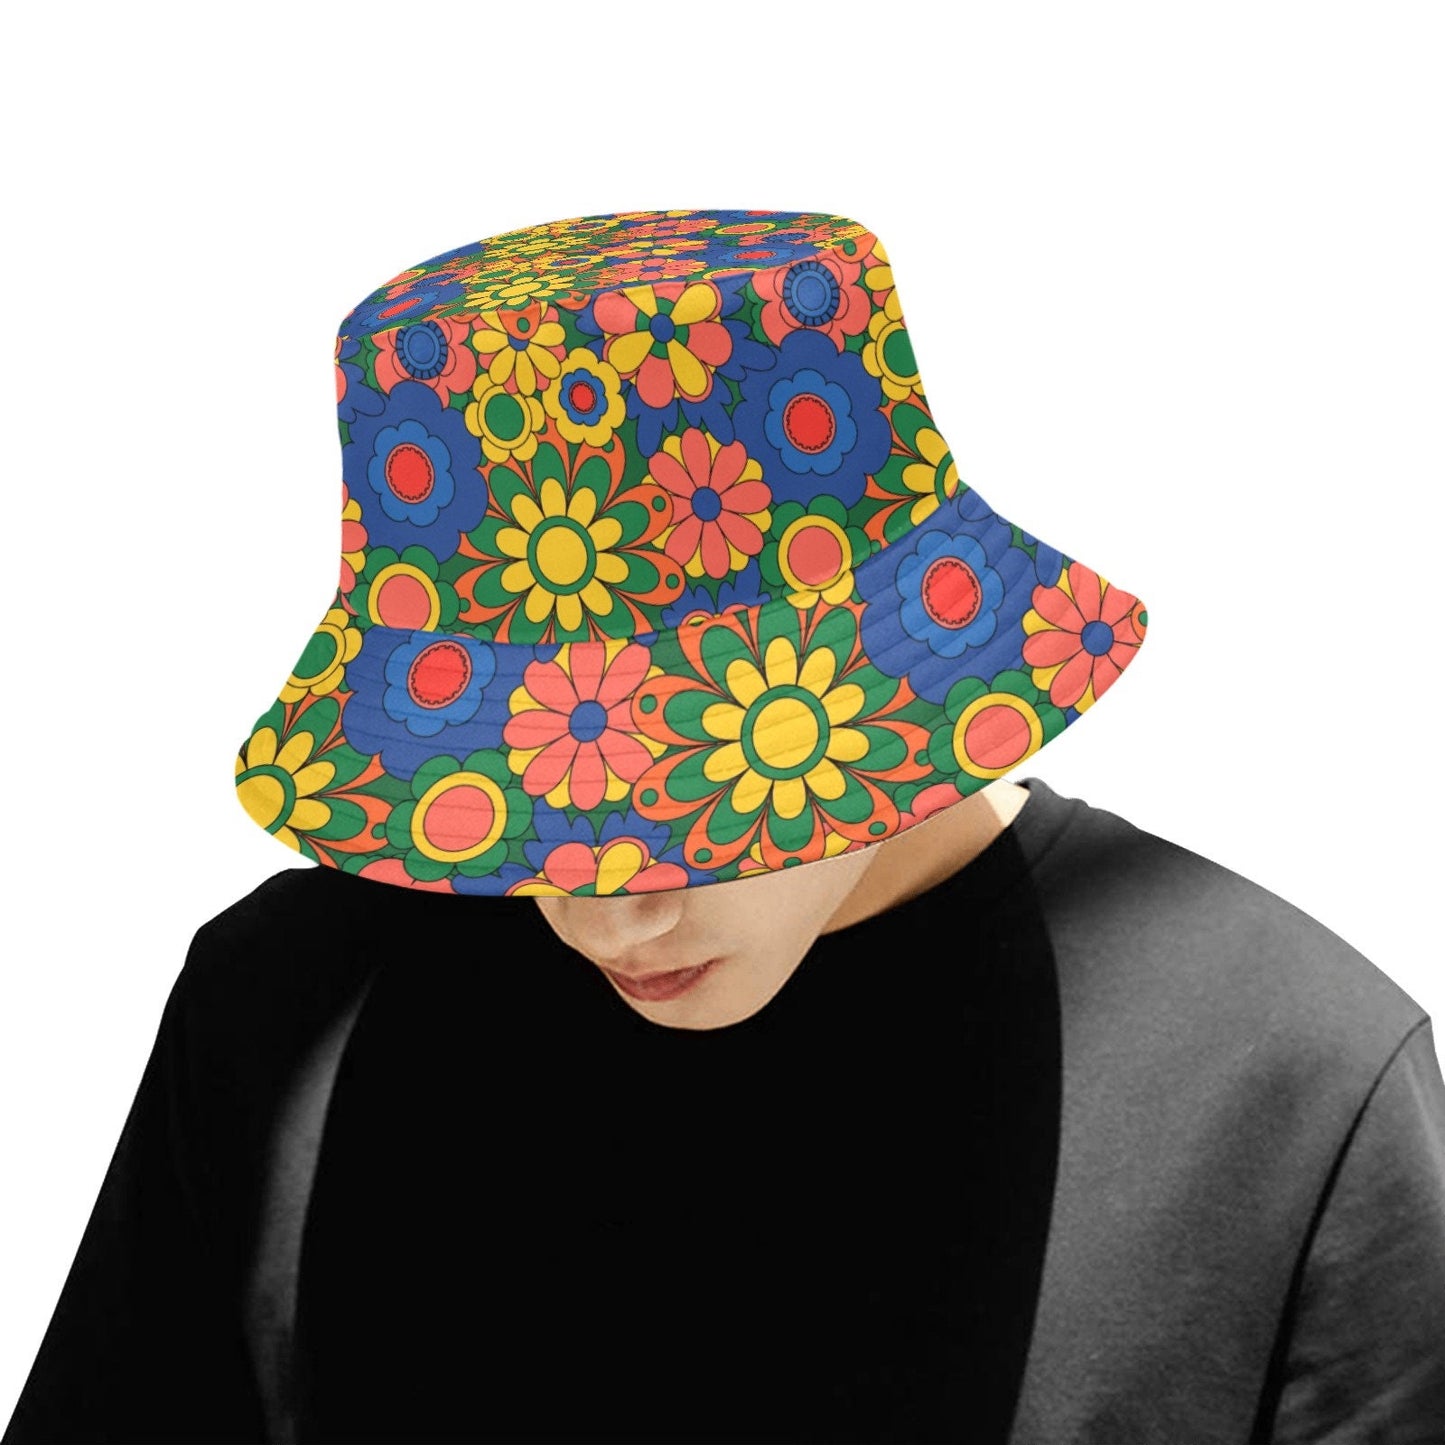 Chapeau seau, chapeau hippie, chapeau mod, chapeau unisexe, chapeau rétro, chapeau de style années 60 70, chapeau floral, chapeau Boho, chapeau seau multicolore, chapeau seau bleu